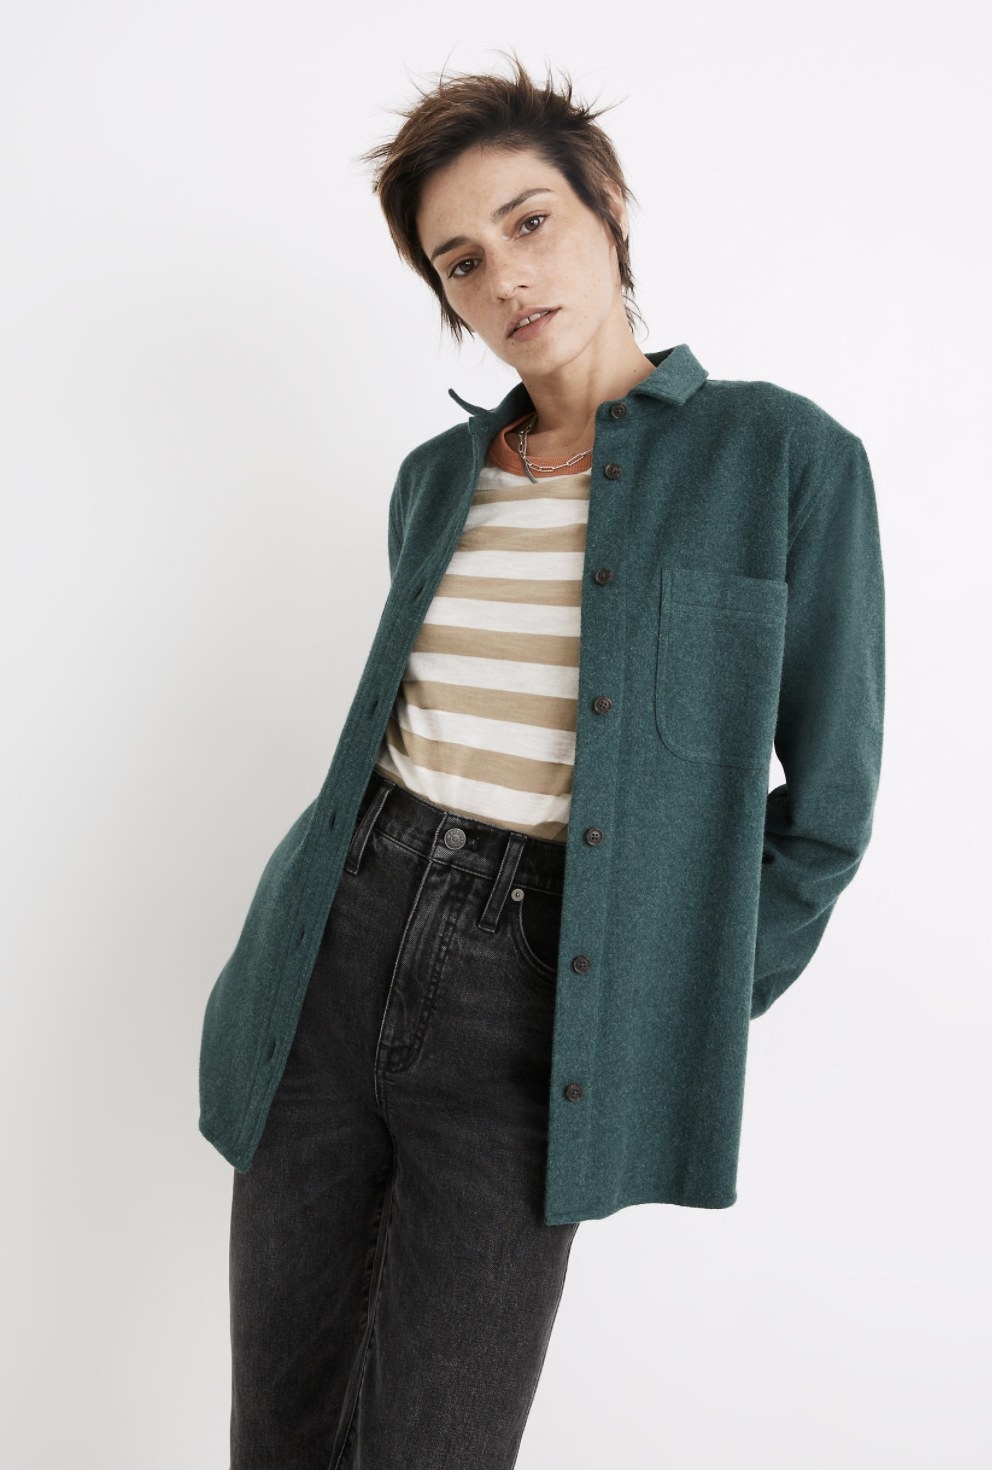 Model wearing the flannel in dark green